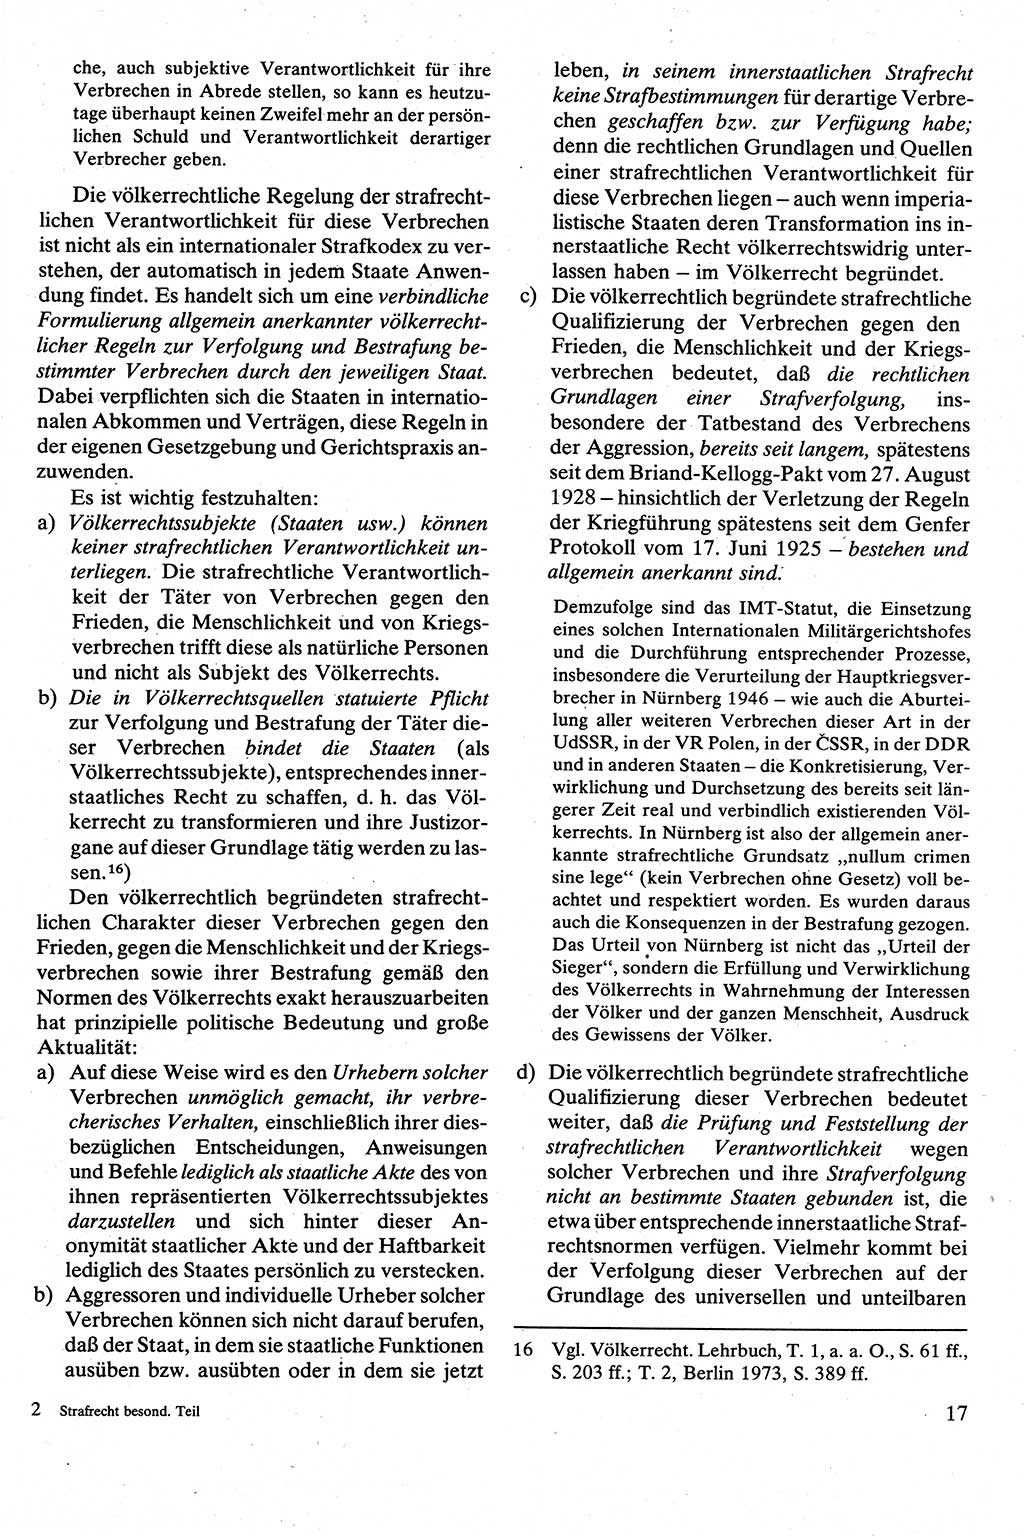 Strafrecht [Deutsche Demokratische Republik (DDR)], Besonderer Teil, Lehrbuch 1981, Seite 17 (Strafr. DDR BT Lb. 1981, S. 17)